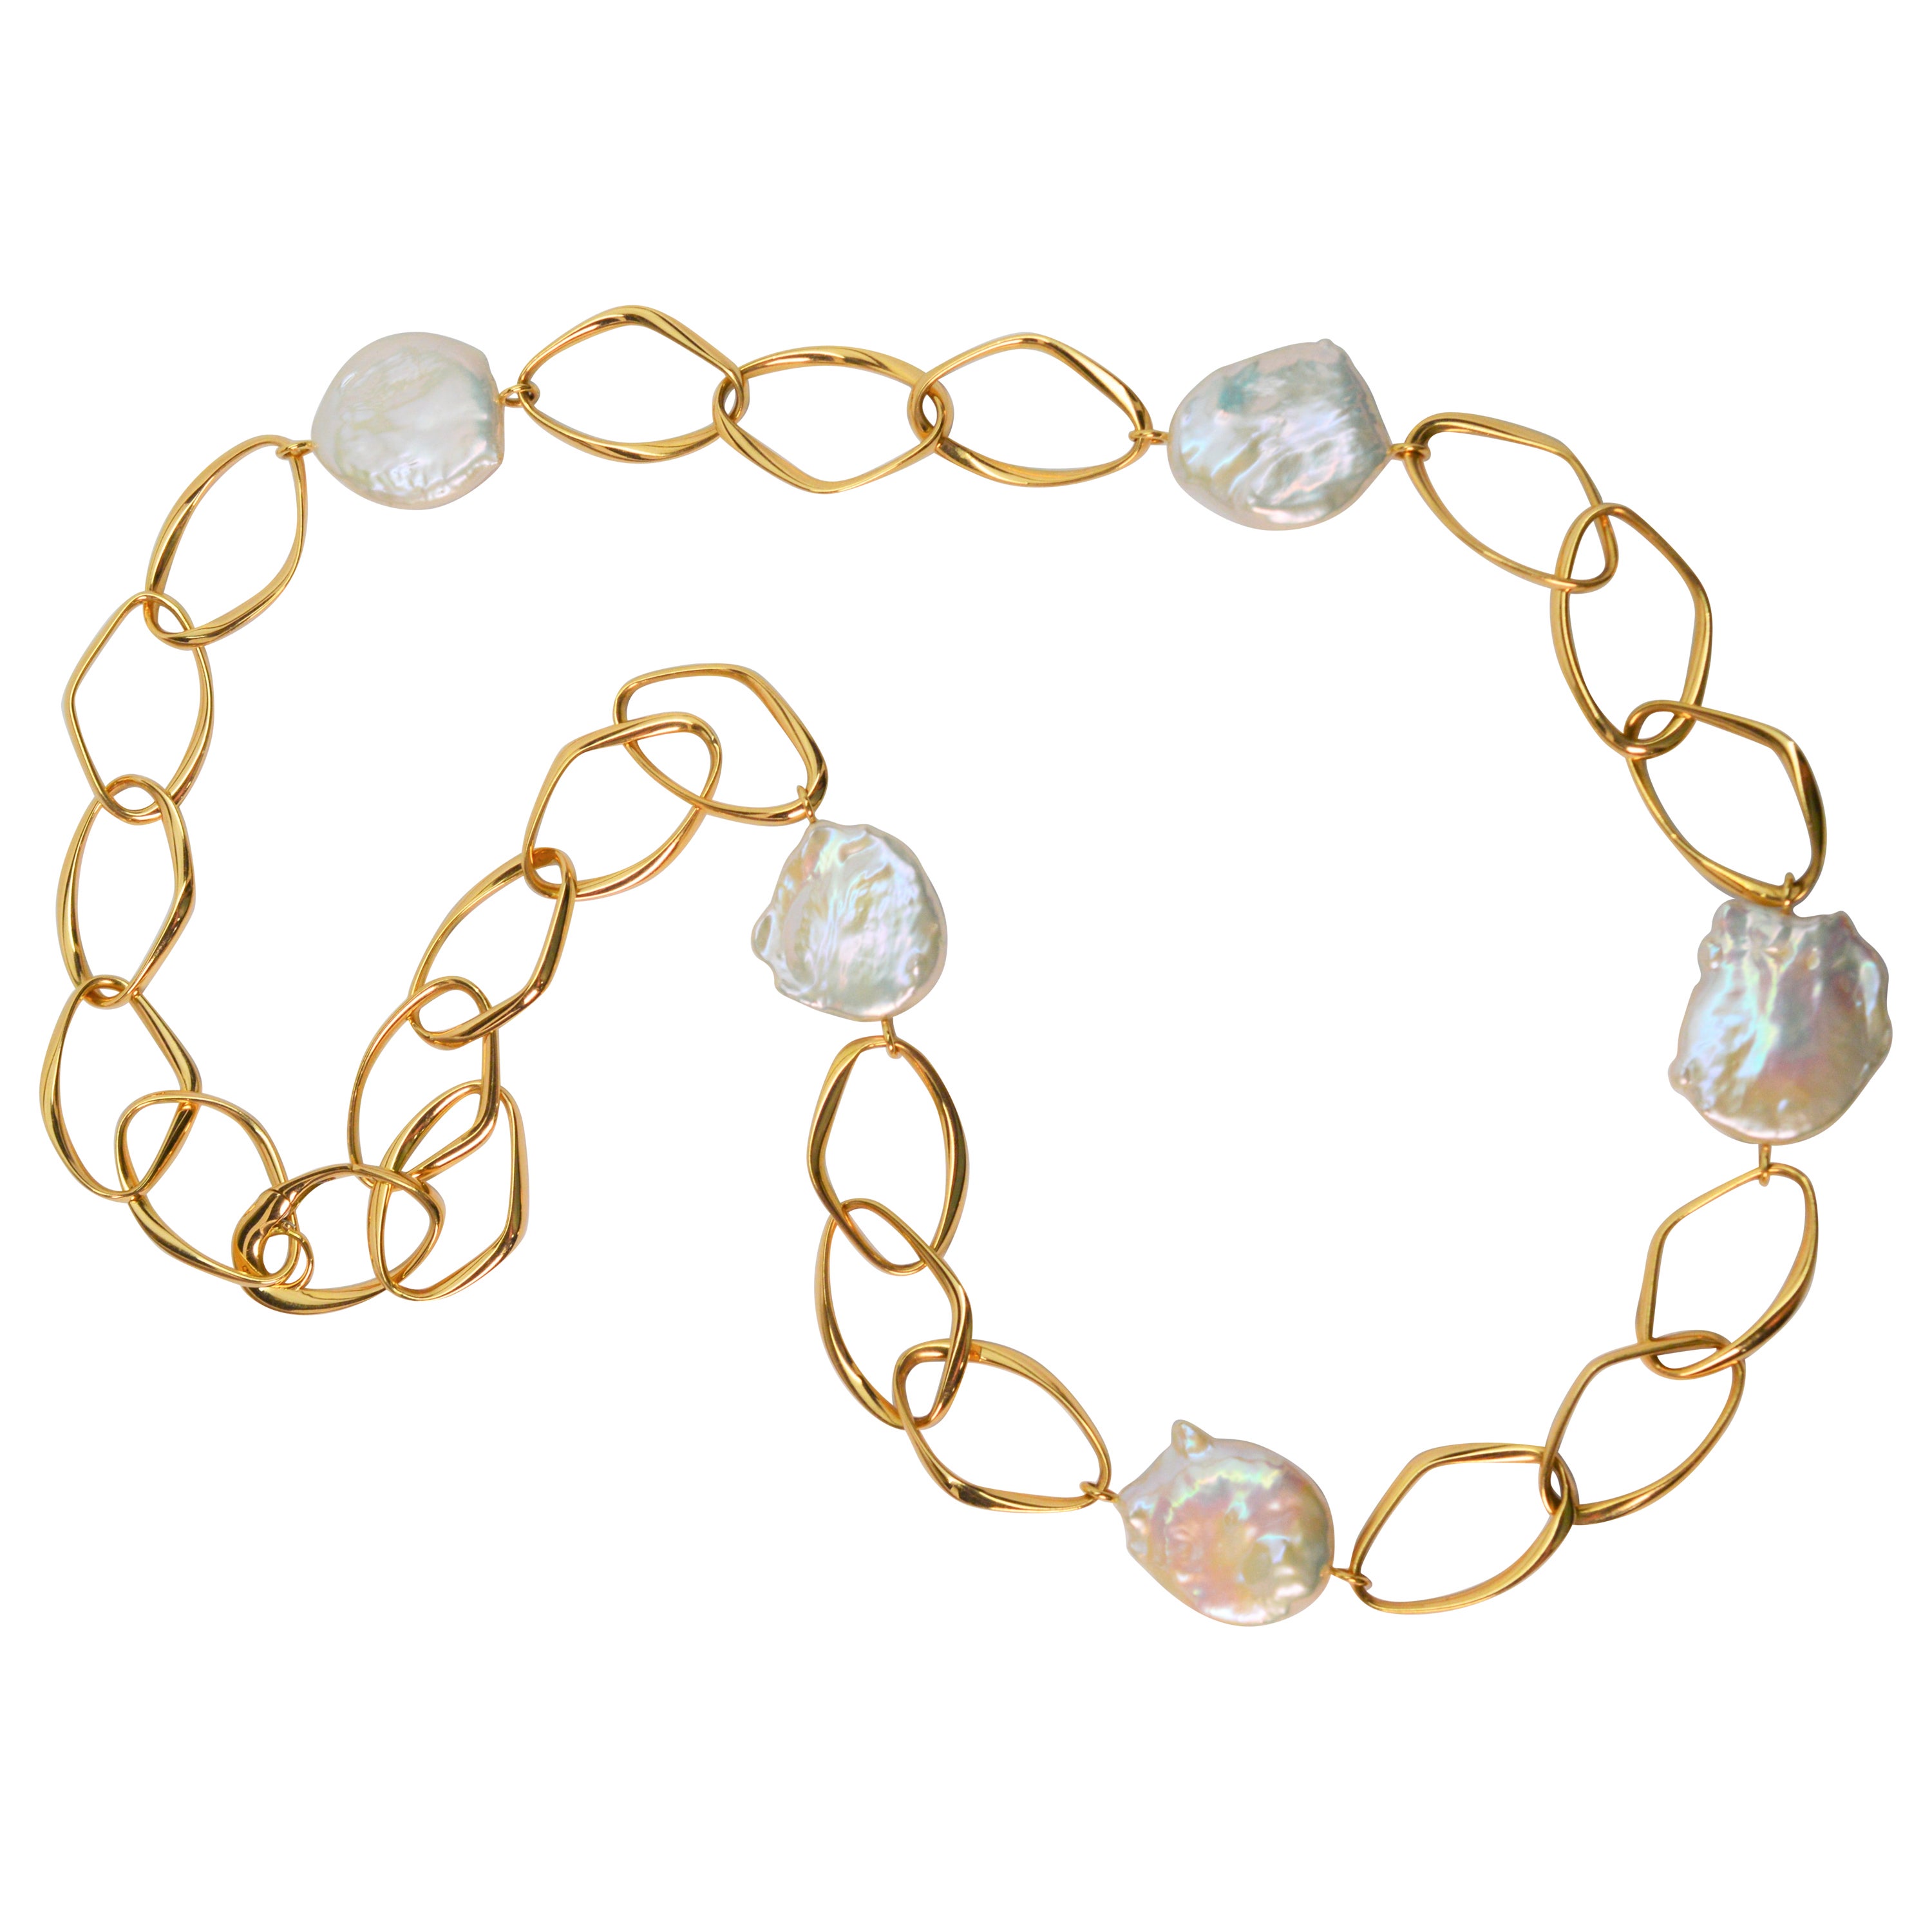 Collier italien en or jaune 18 carats avec grande chaîne à maillons et pièces de monnaie en perles